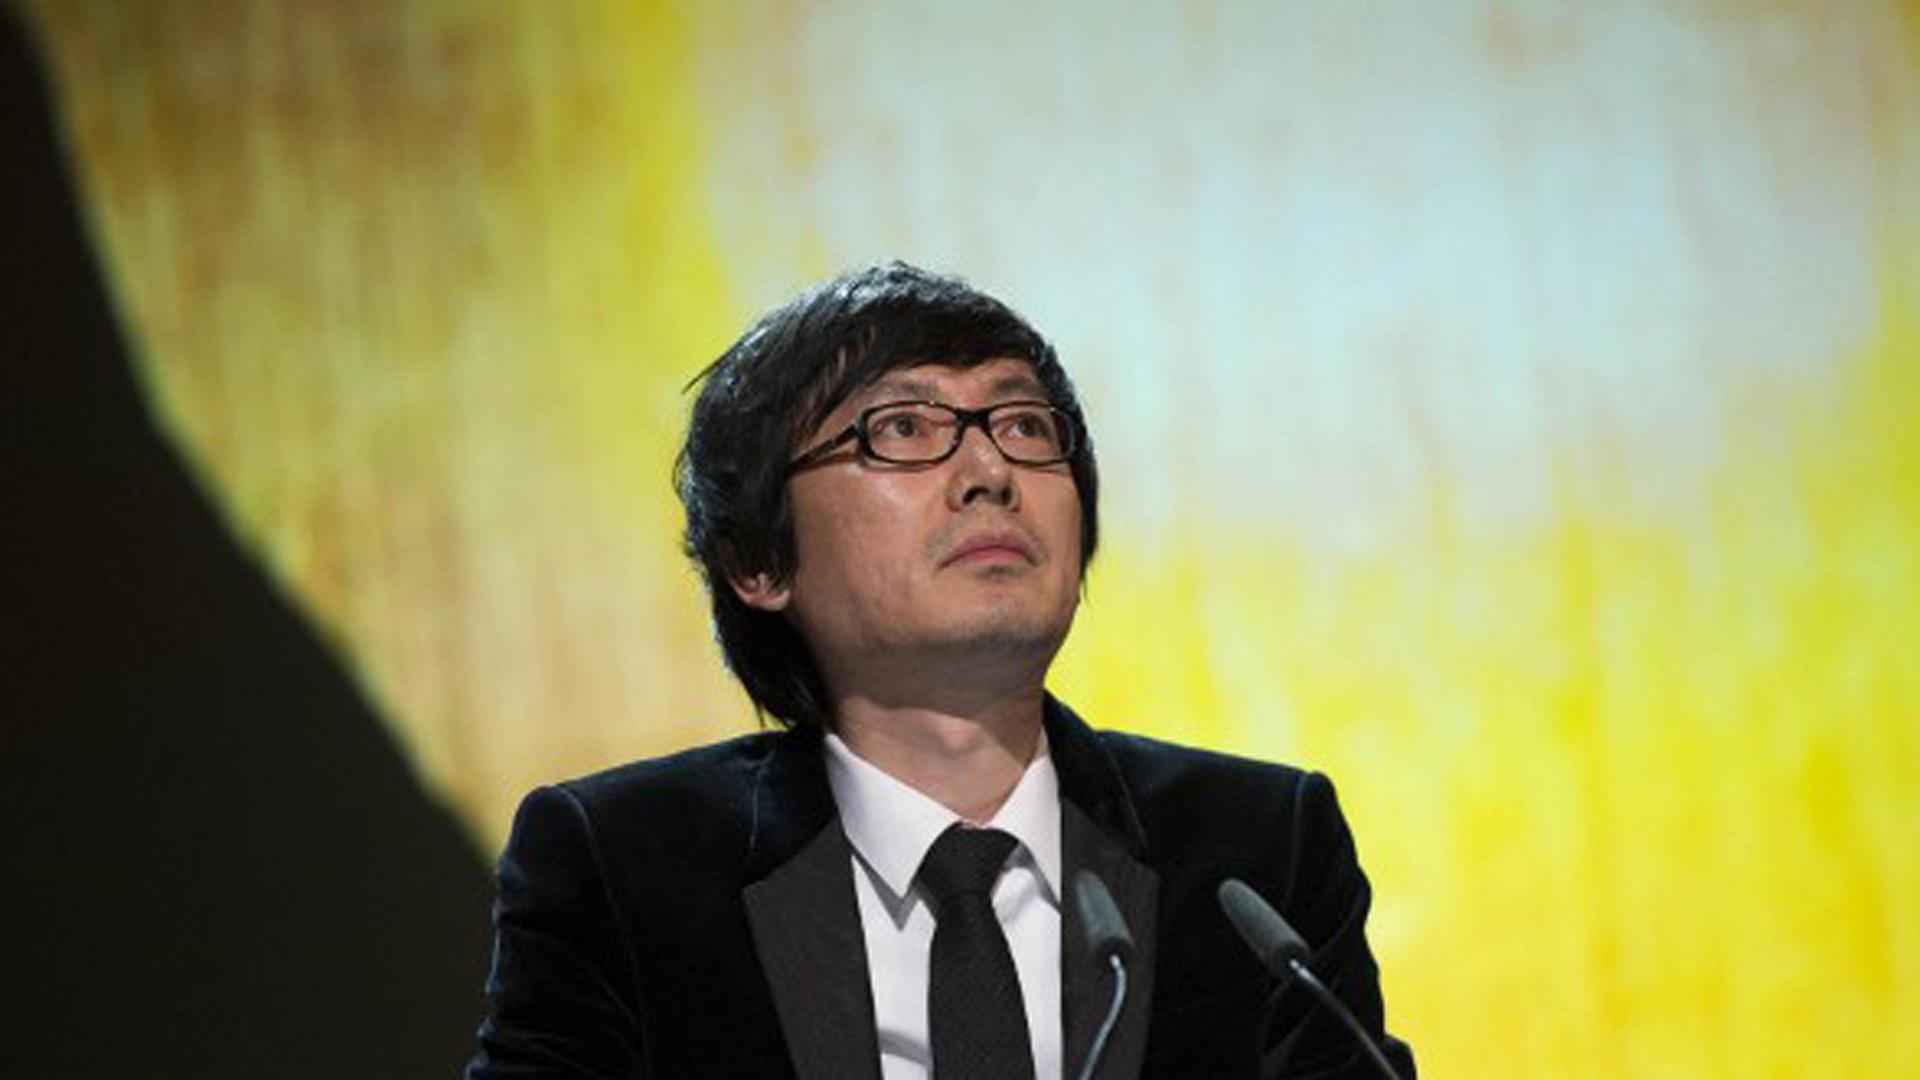 Der chinesische Filmemacher Diao Yinan bei der Verleihung des Goldenen Bären für seinen Film "Ein Feuerwerk am hellichten Tag" in Berlin.